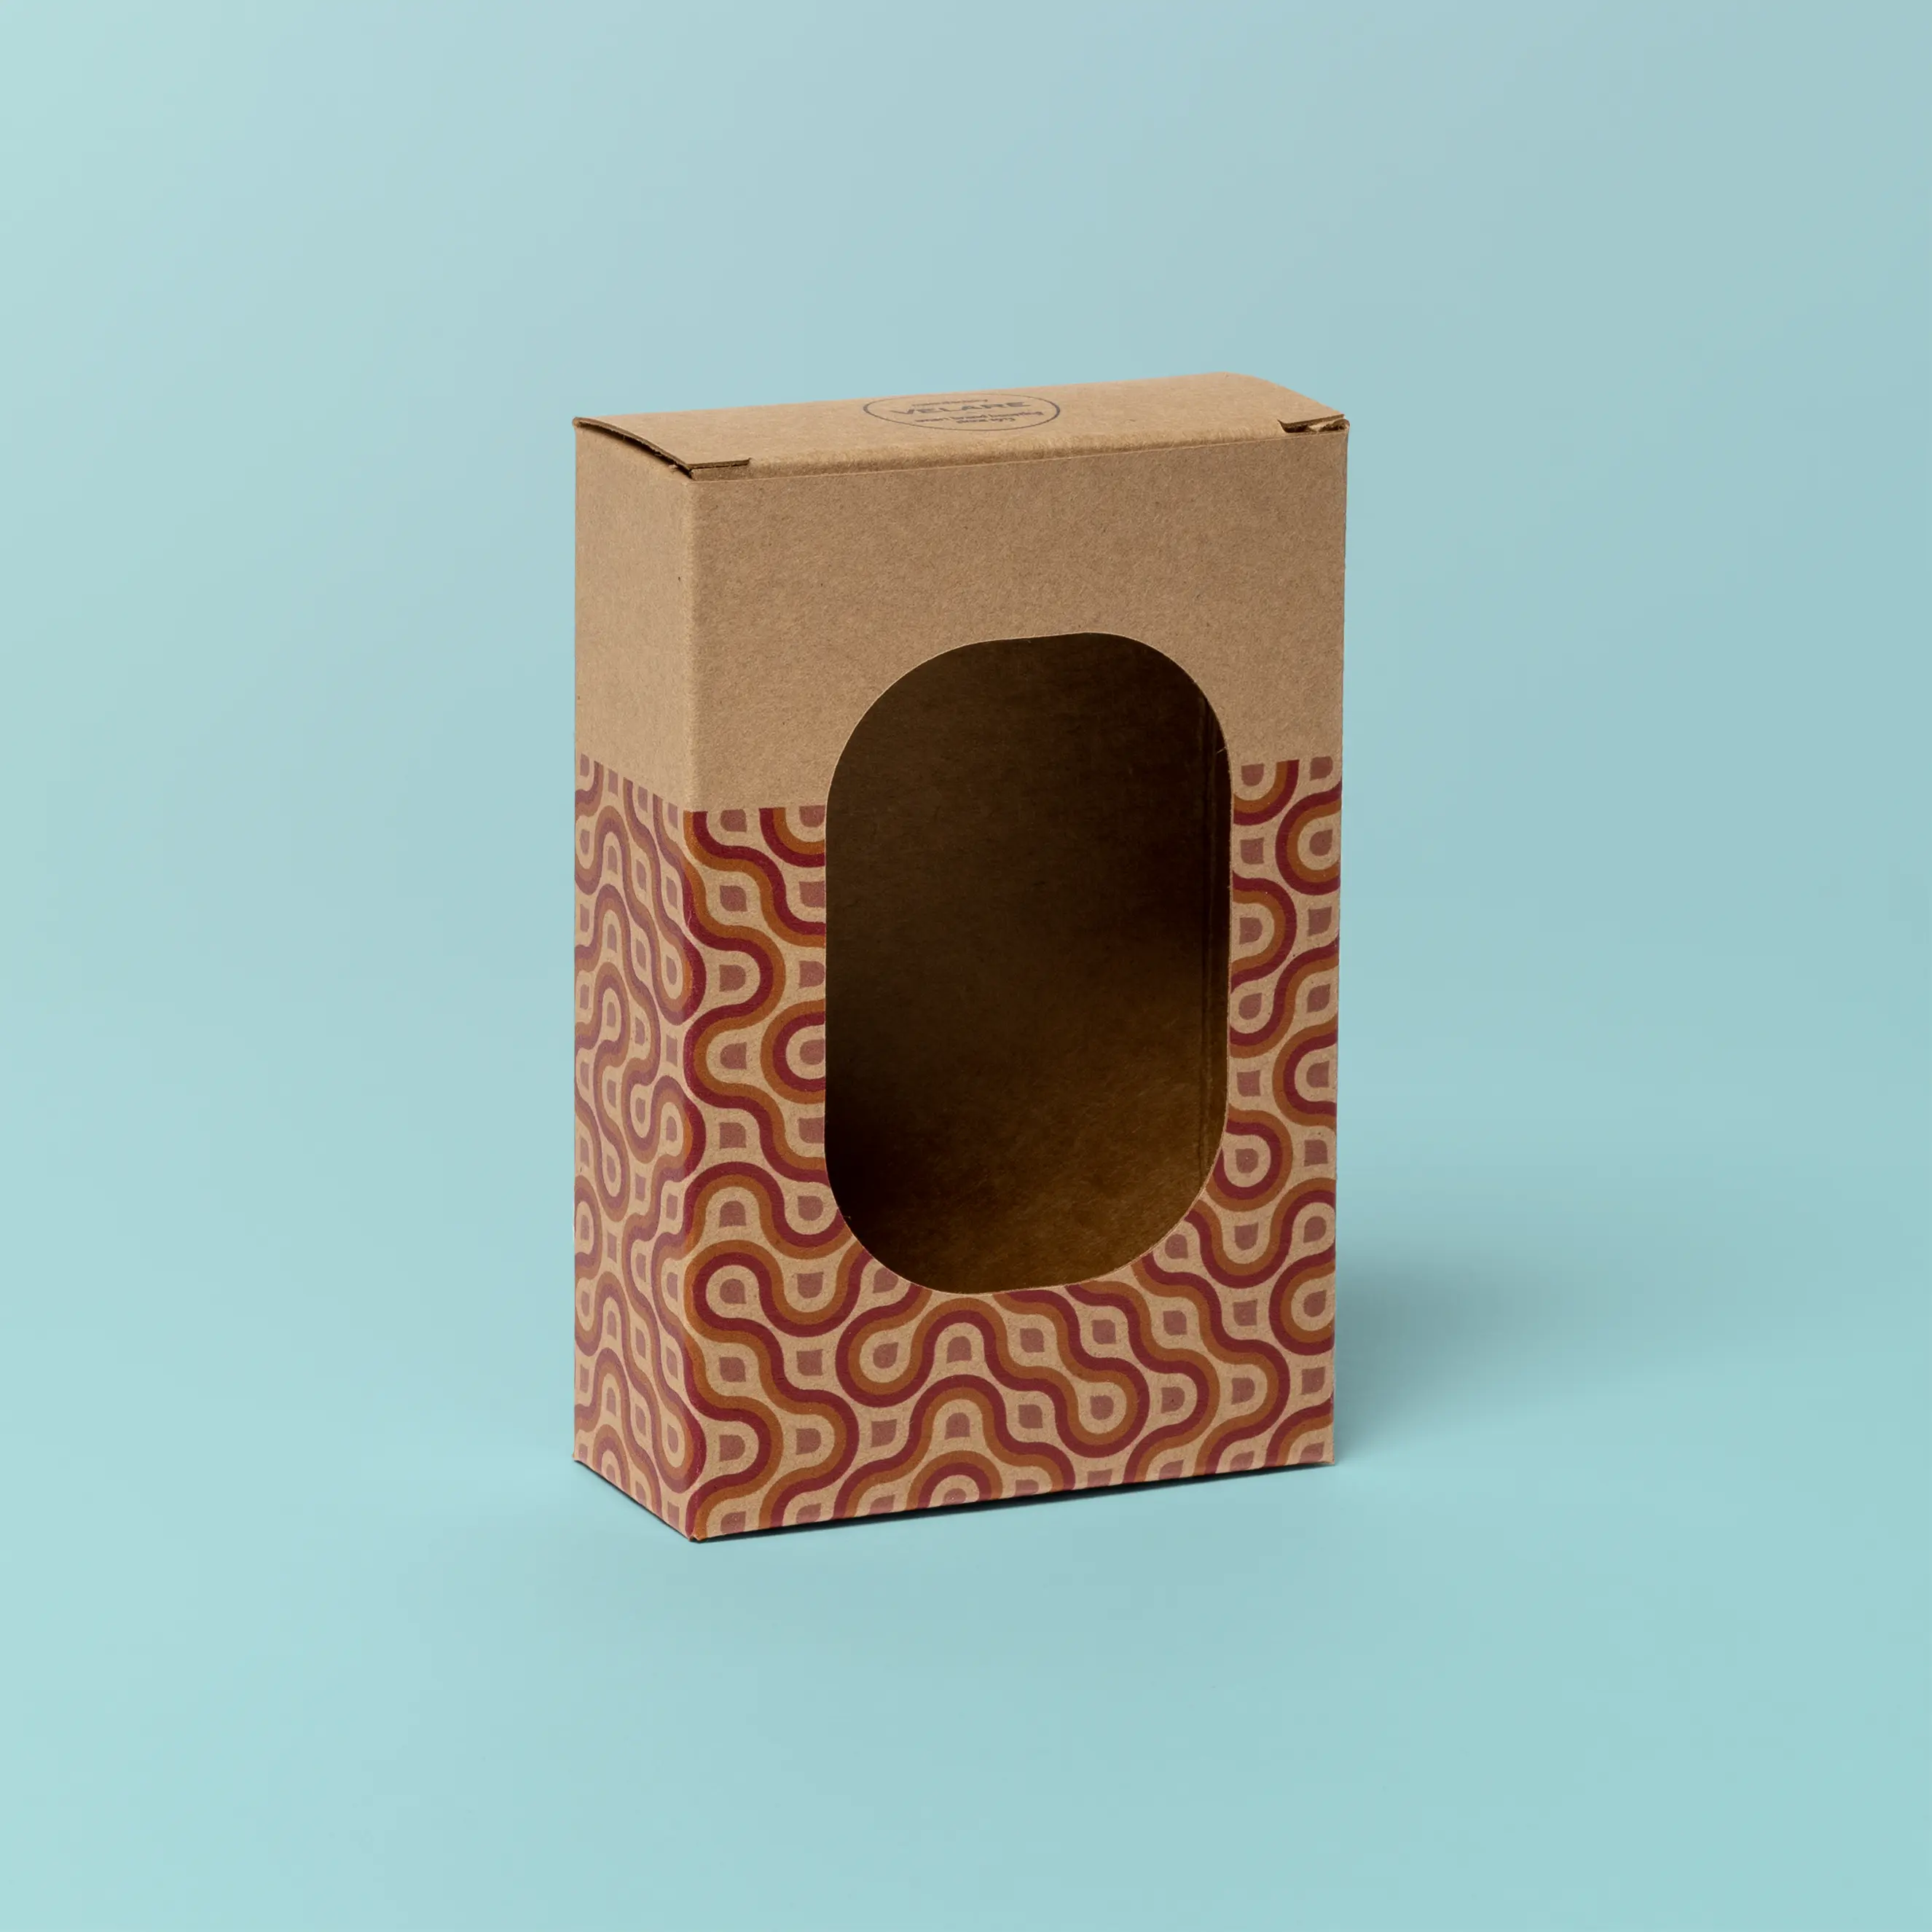 Musterverpackung aus braunem Karton mit Sichtfenster, grüner Hintergrund